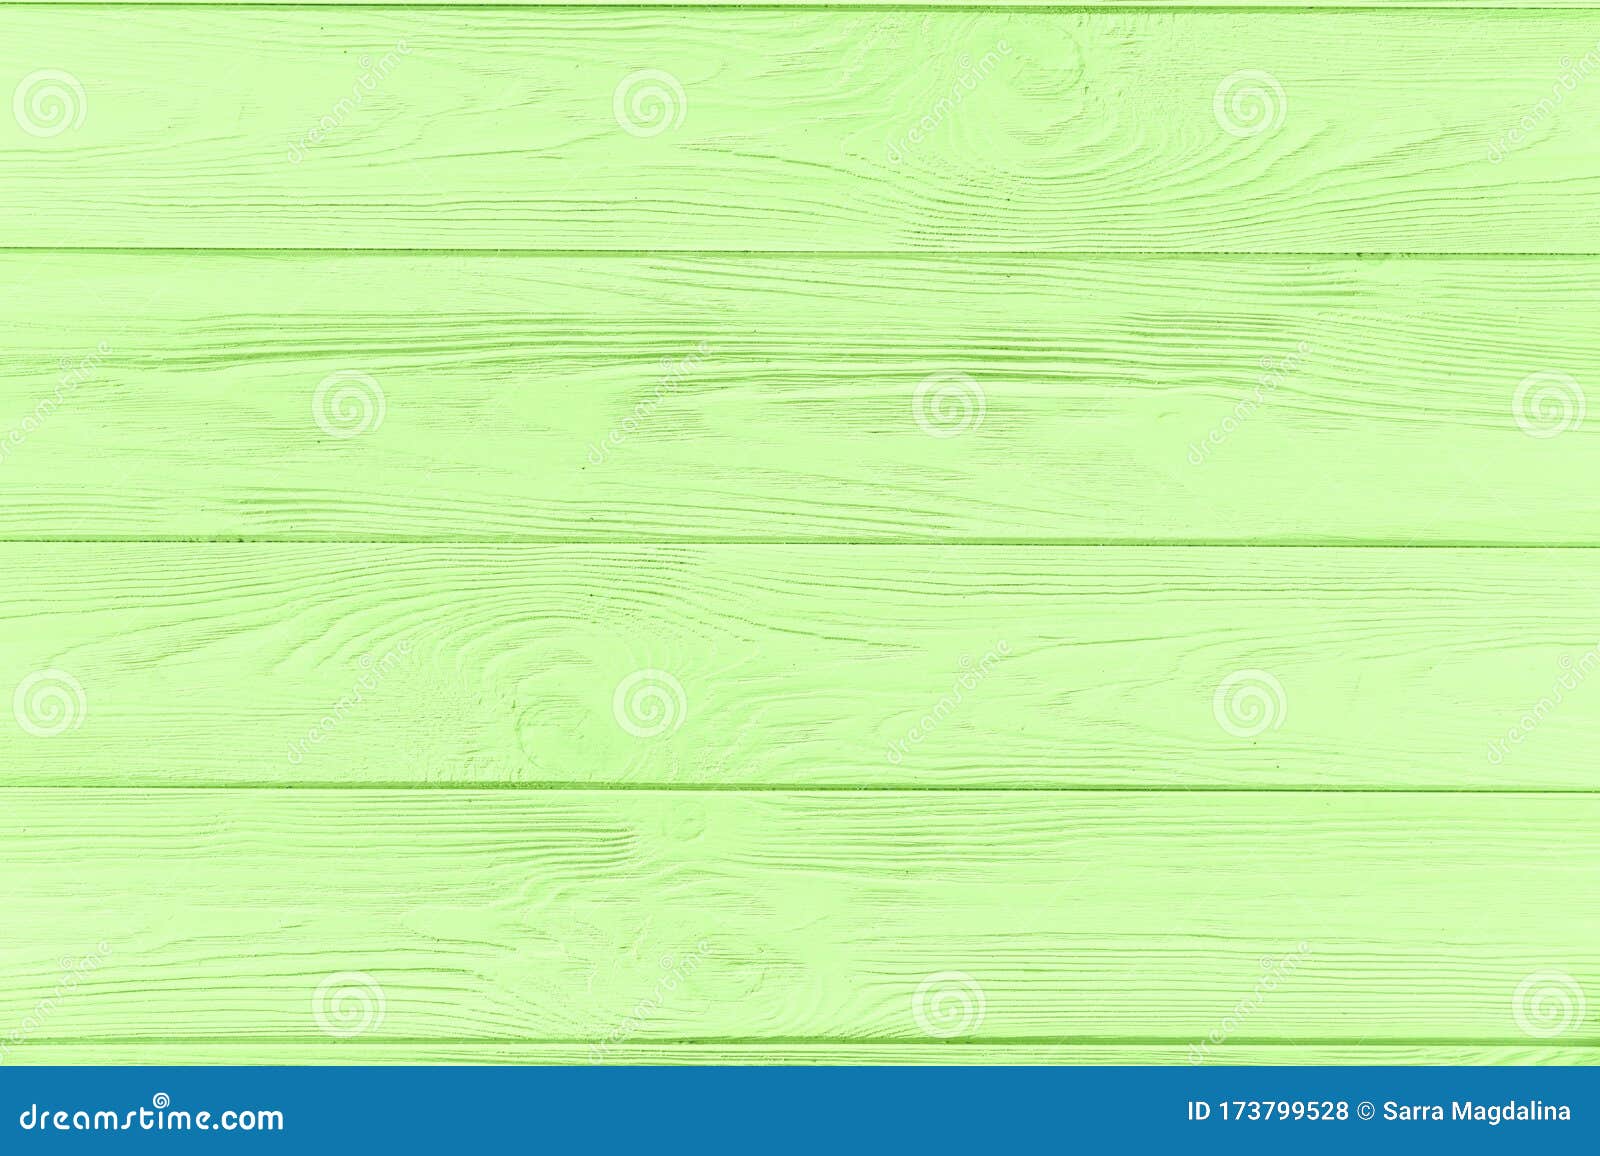 Nền hình ảnh gỗ màu xanh: Bức tranh nền gỗ màu xanh này đem lại một không gian rộng mở, rất khoáng đạt và hoàn toàn thích hợp để sử dụng trong các tổ chức và văn phòng. Hãy xem qua bức hình này để cảm nhận sự khác biệt mà nó mang lại.